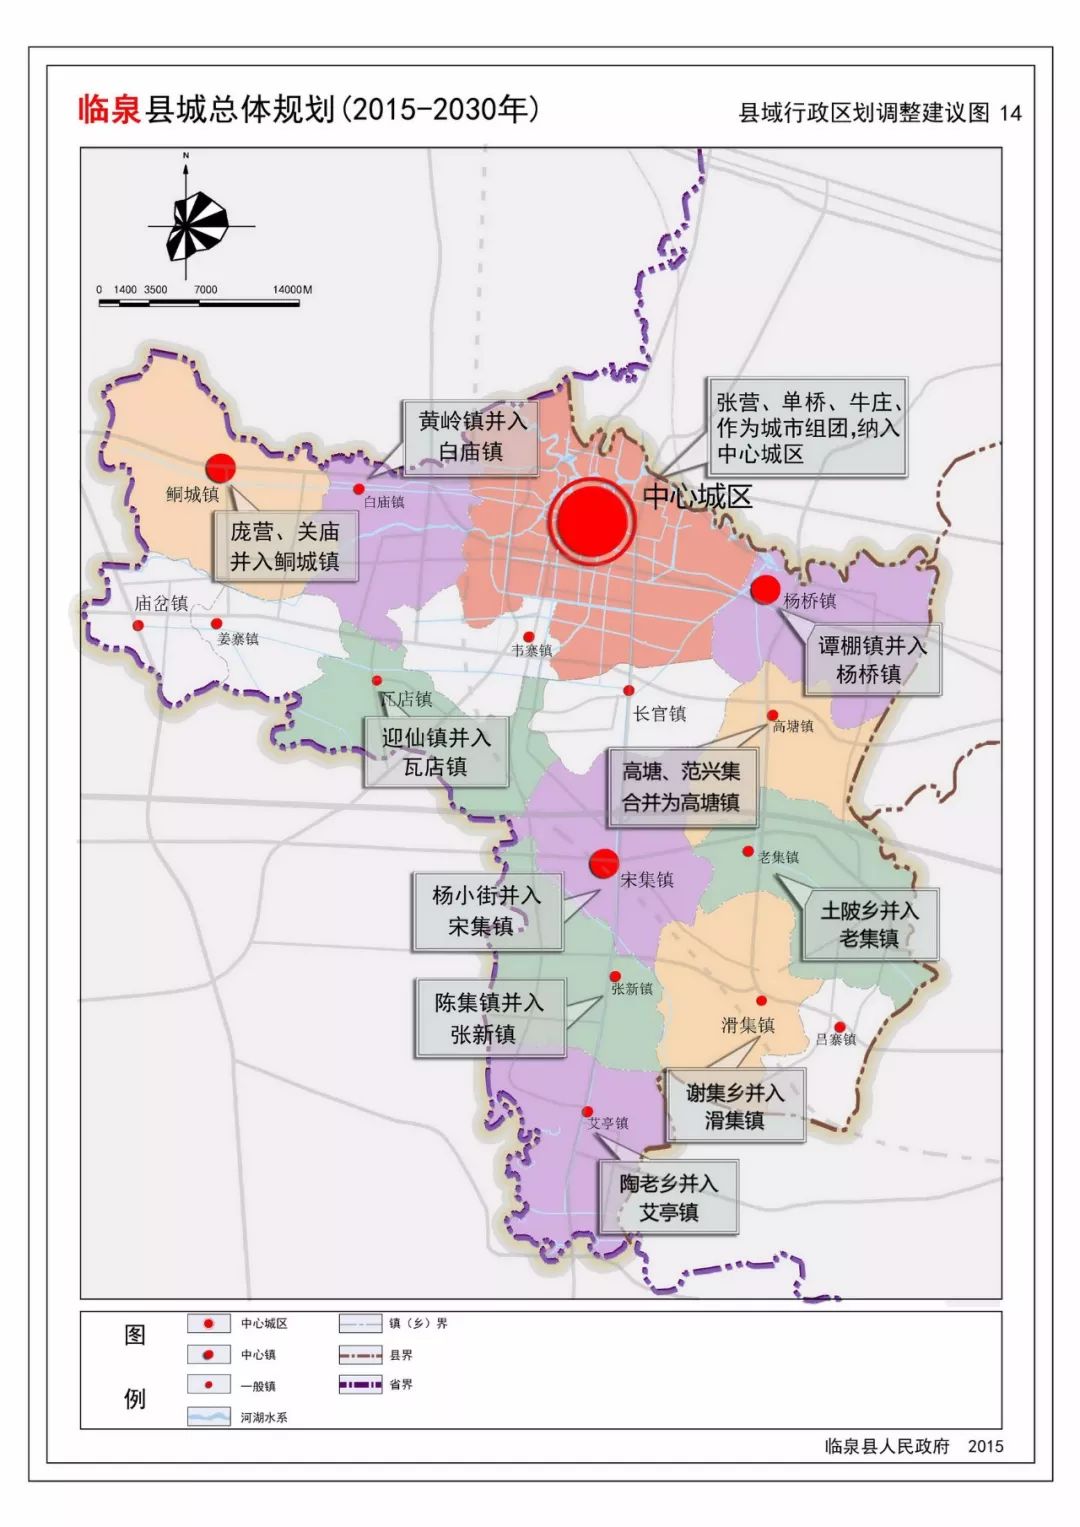 近日,临泉县公布 临泉县城总体规划(20-2030) (2018年修改